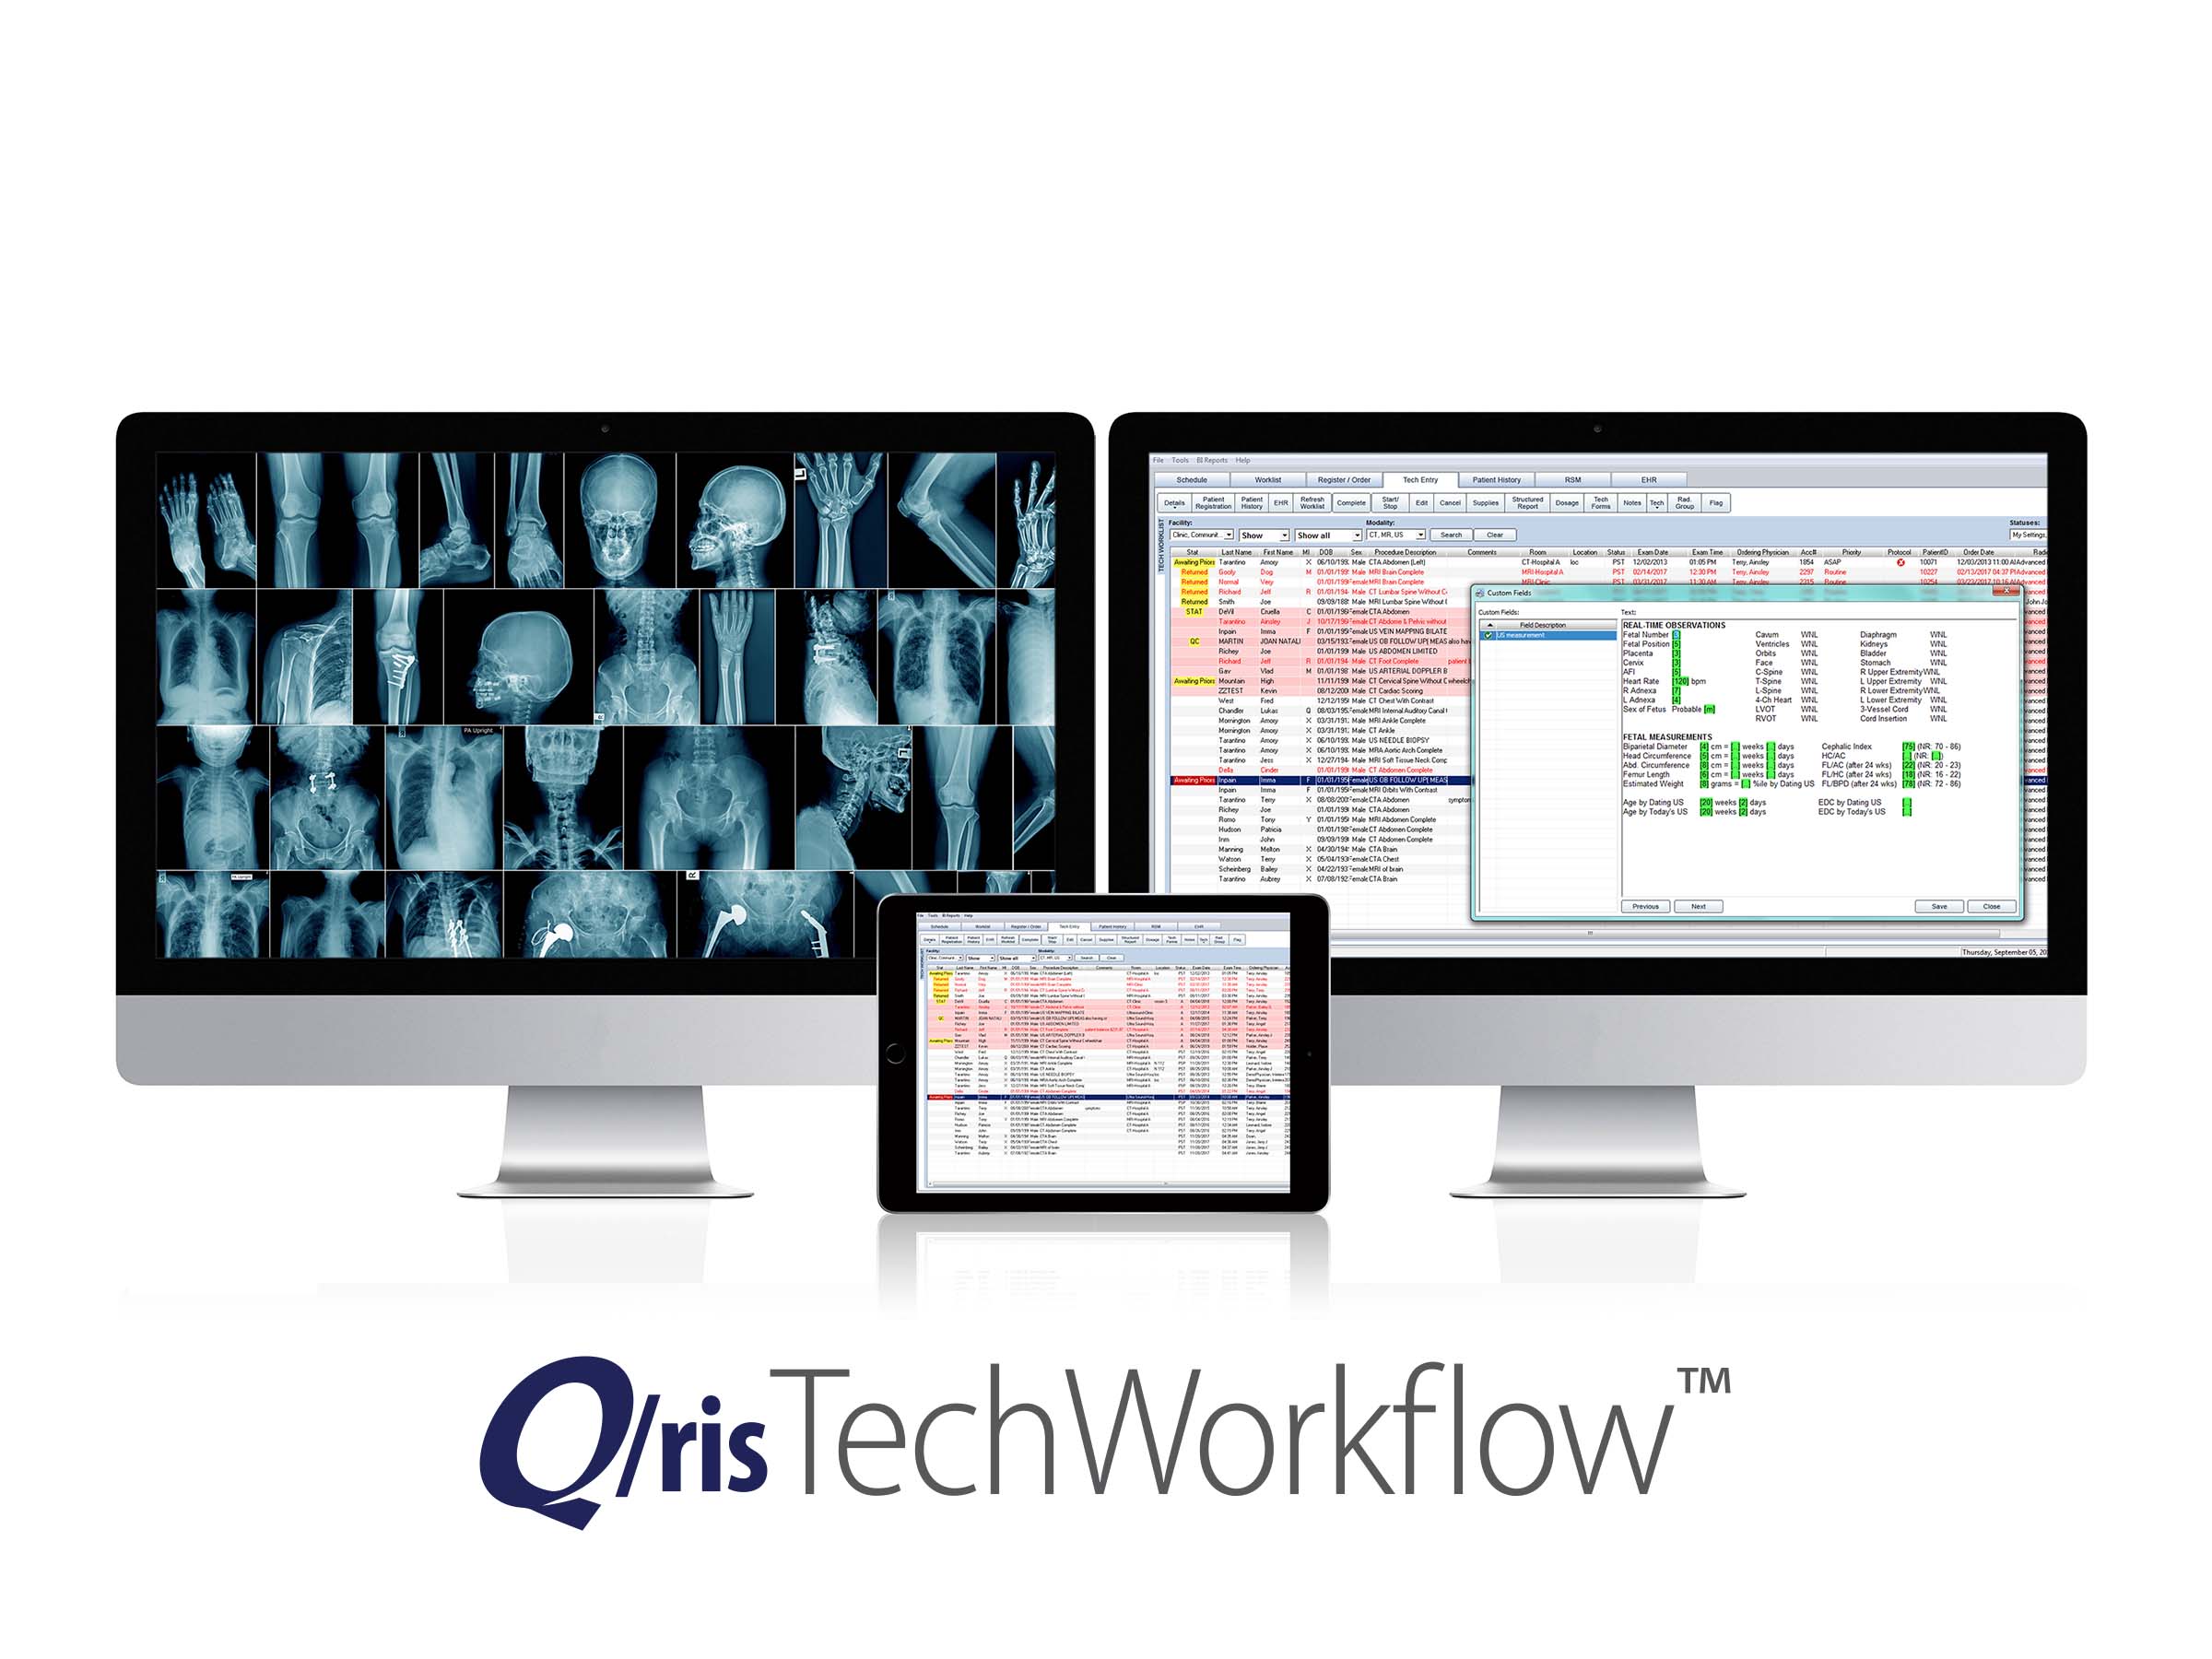 Q/ris Tech Workflow